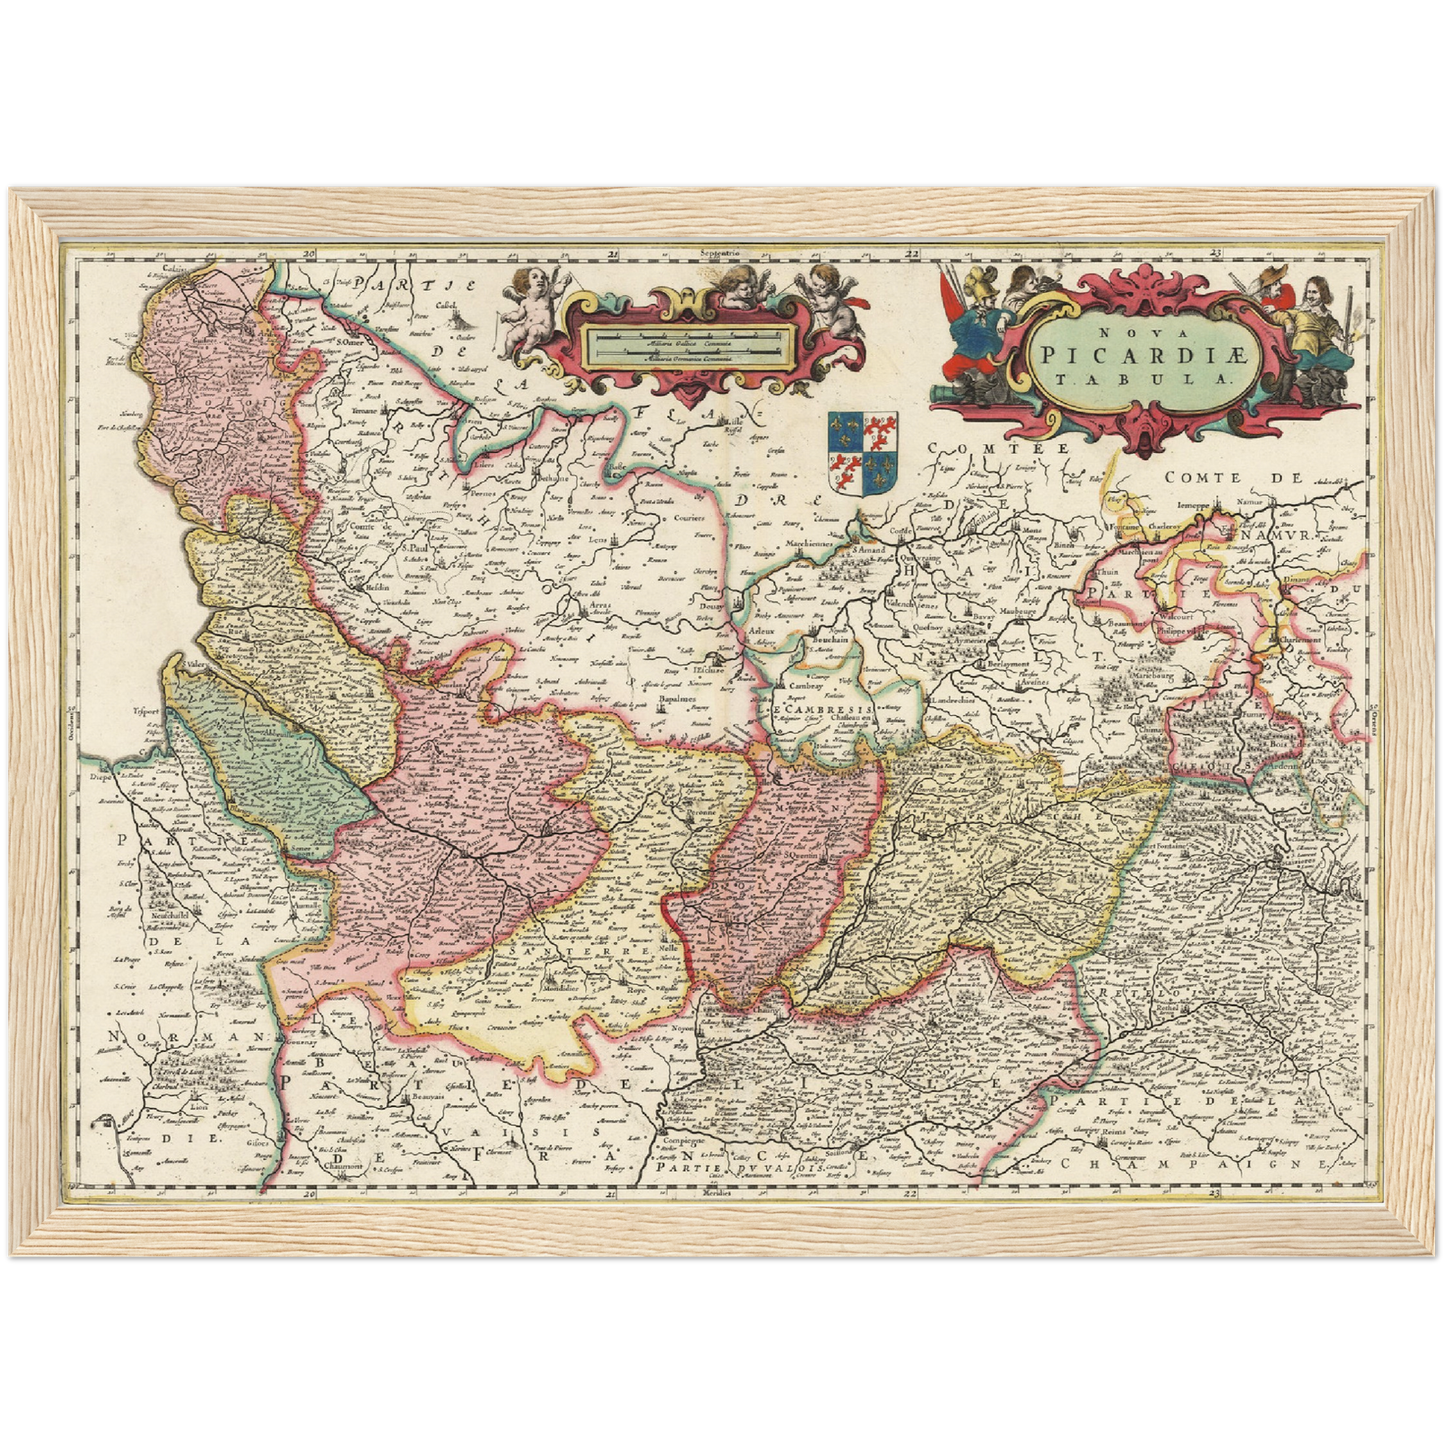 Historische Landkarte Picardie um 1650